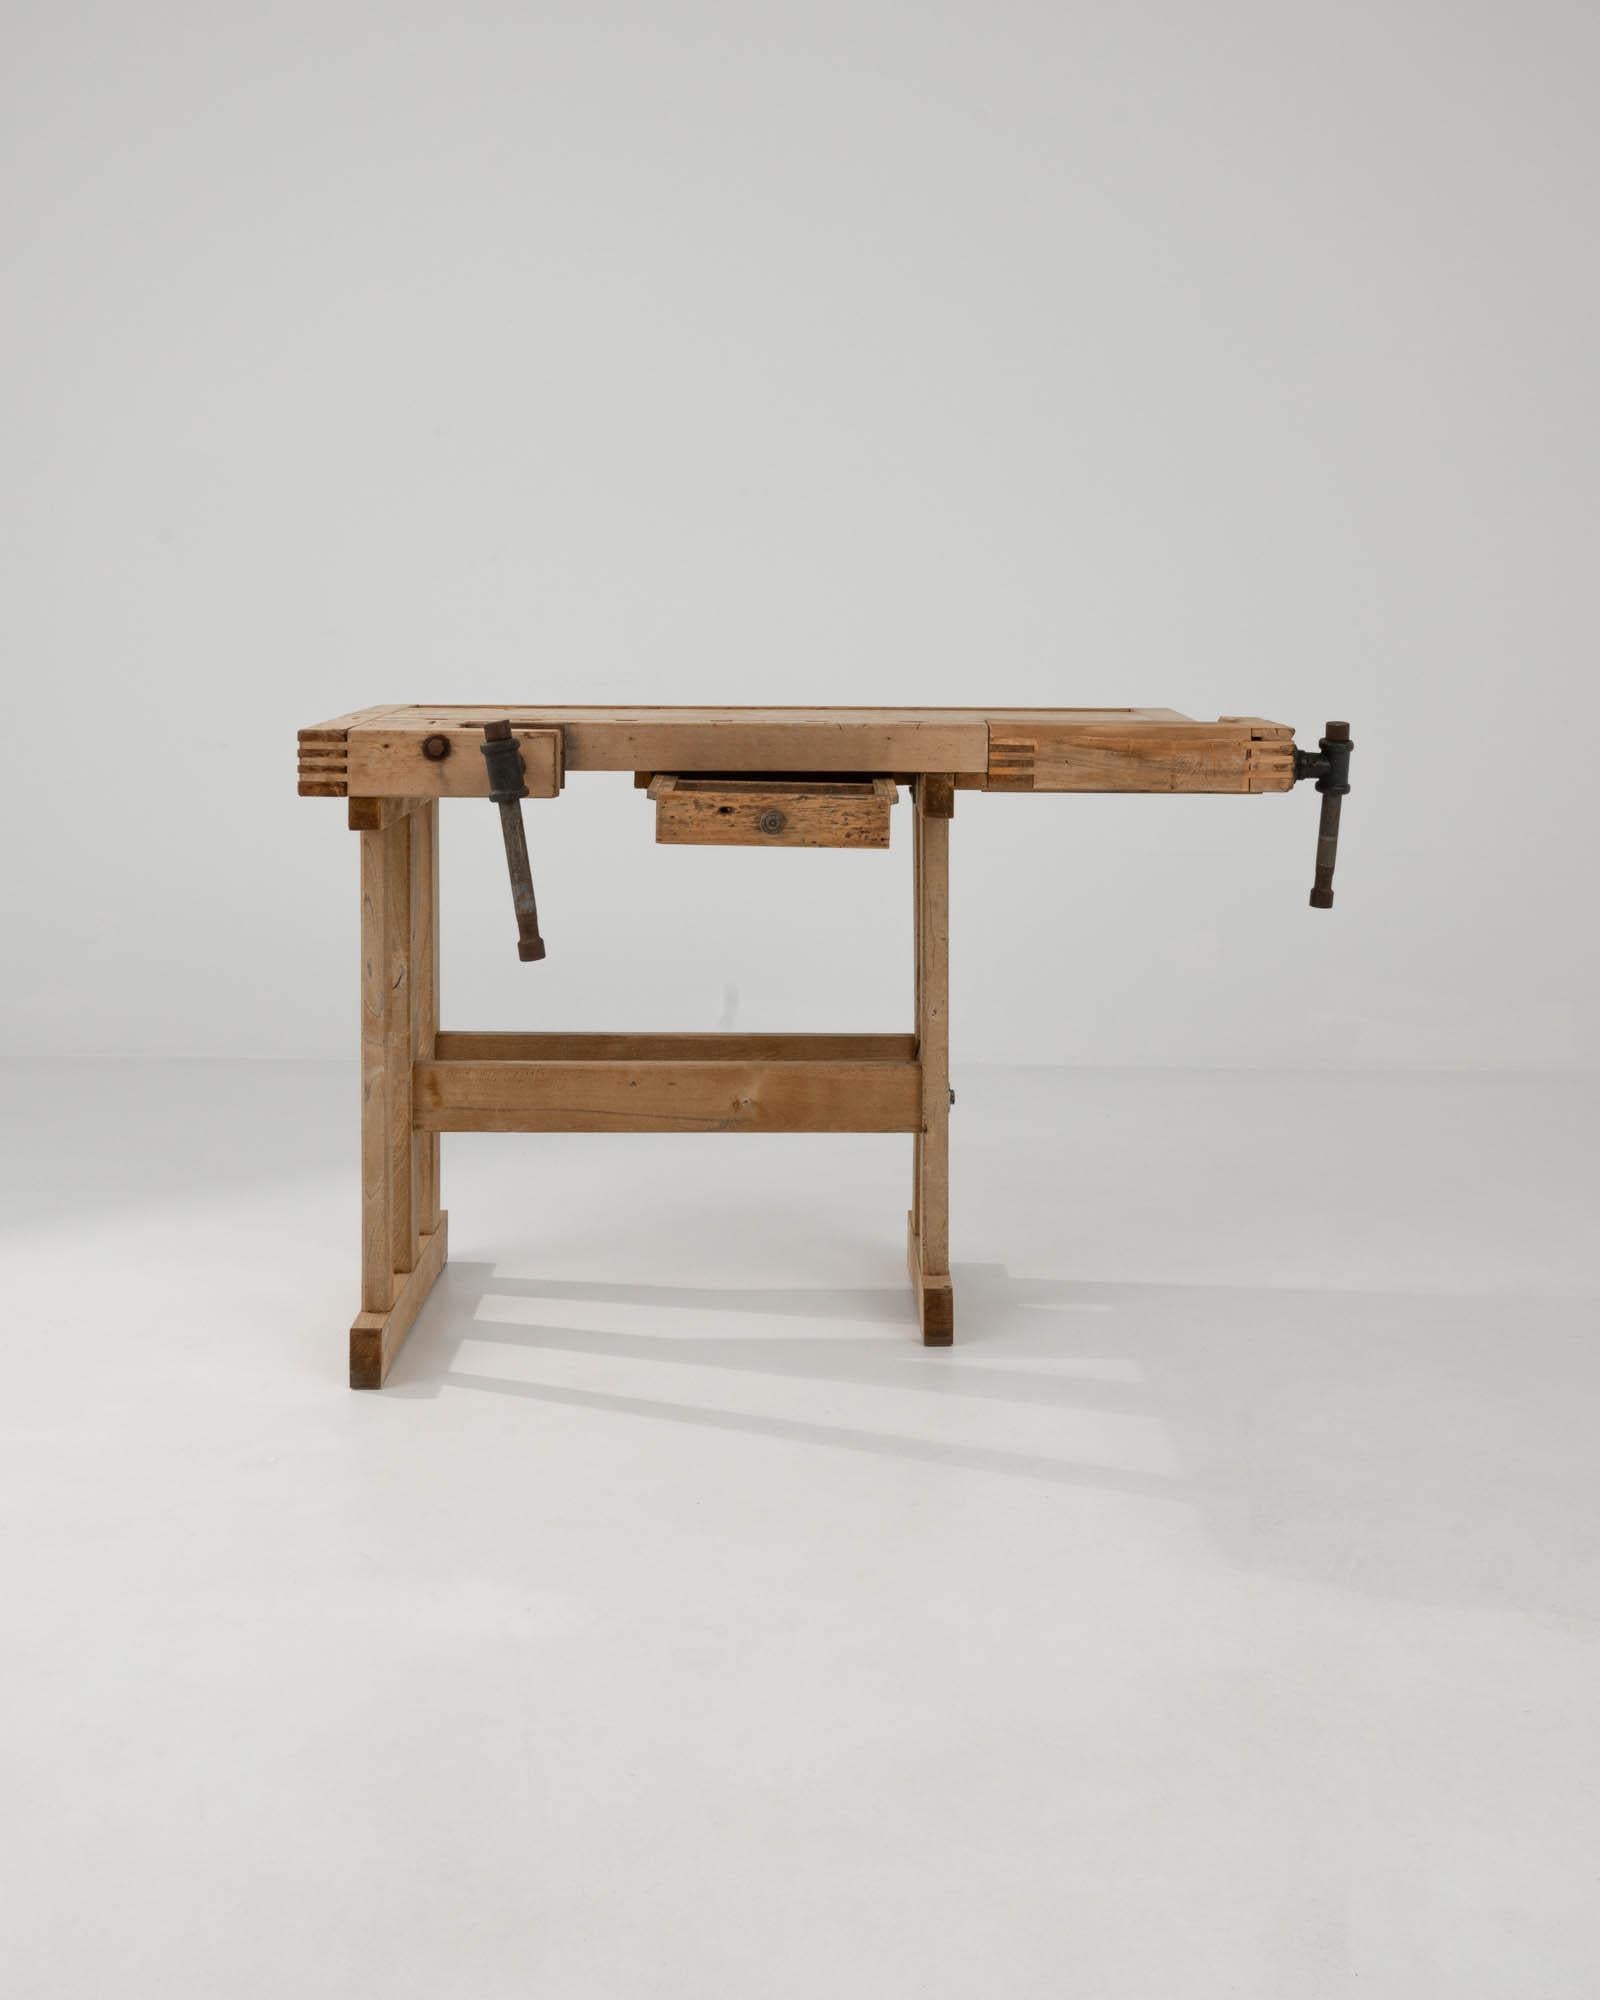 Mit seinem handwerklichen Design und seiner warmen, natürlichen Oberfläche setzt dieser Vintage-Holztisch einen eindrucksvollen industriellen Akzent. Das im 20. Jahrhundert in Belgien gebaute Stück diente ursprünglich als Werkbank eines Schreiners;